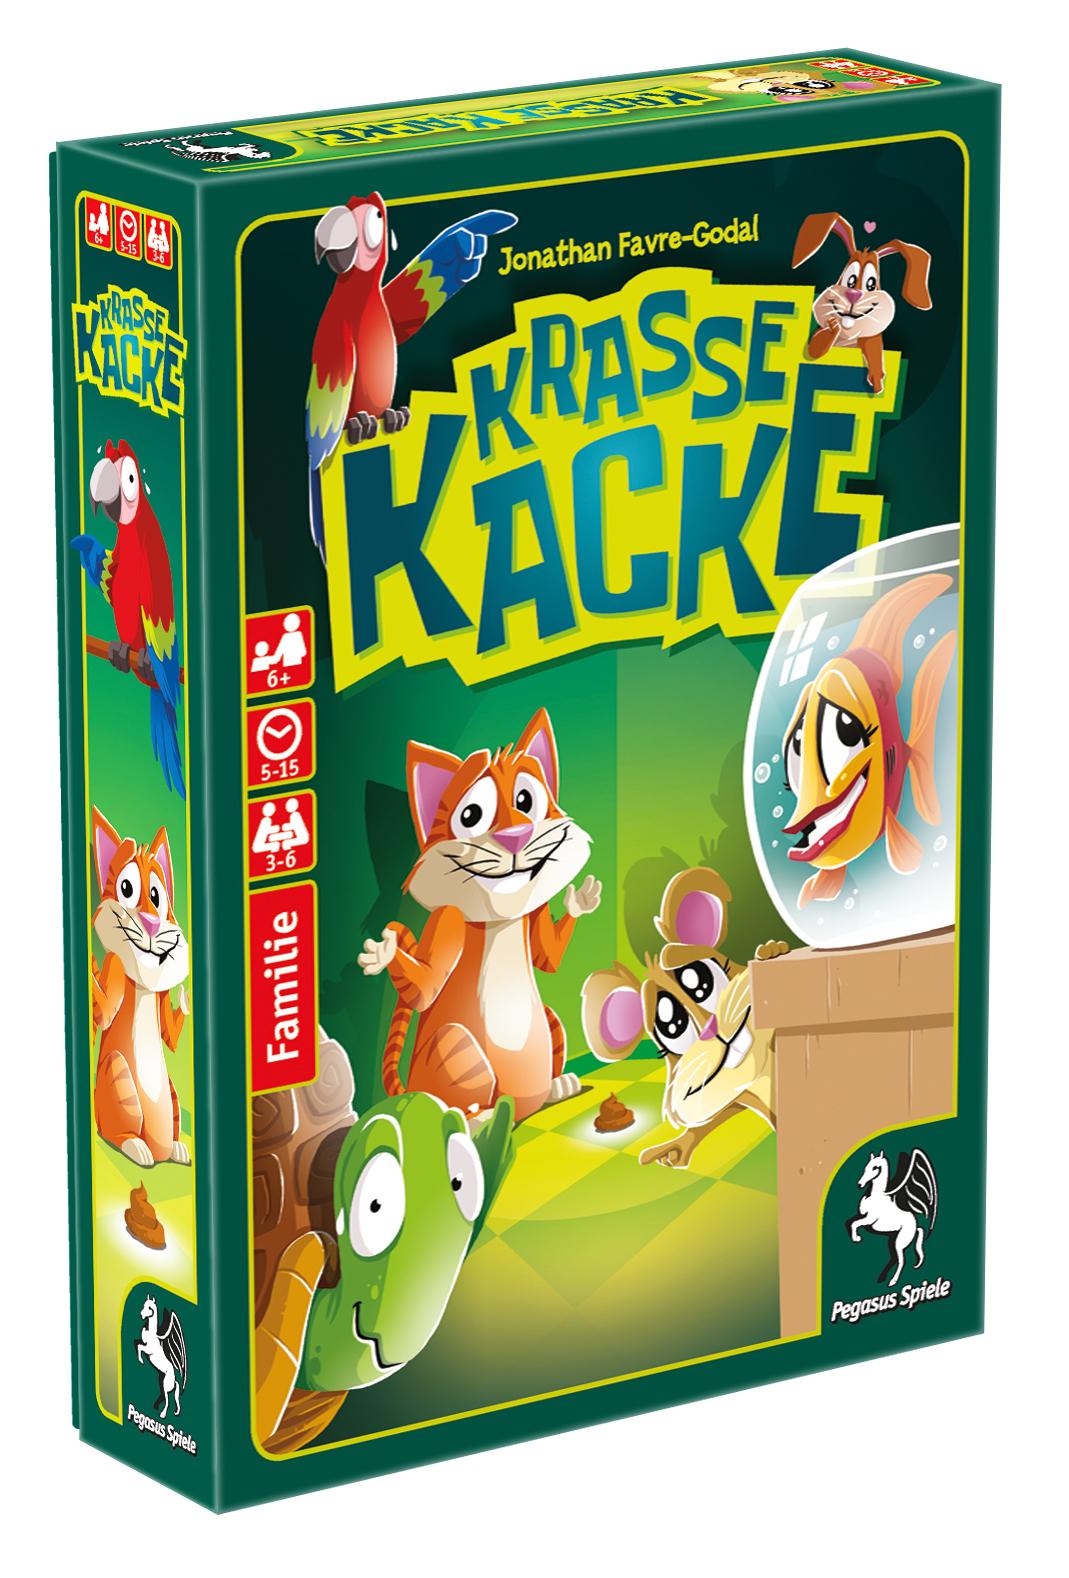 Krasse Kacke Spielanleitung – PDF Download 0 (0)